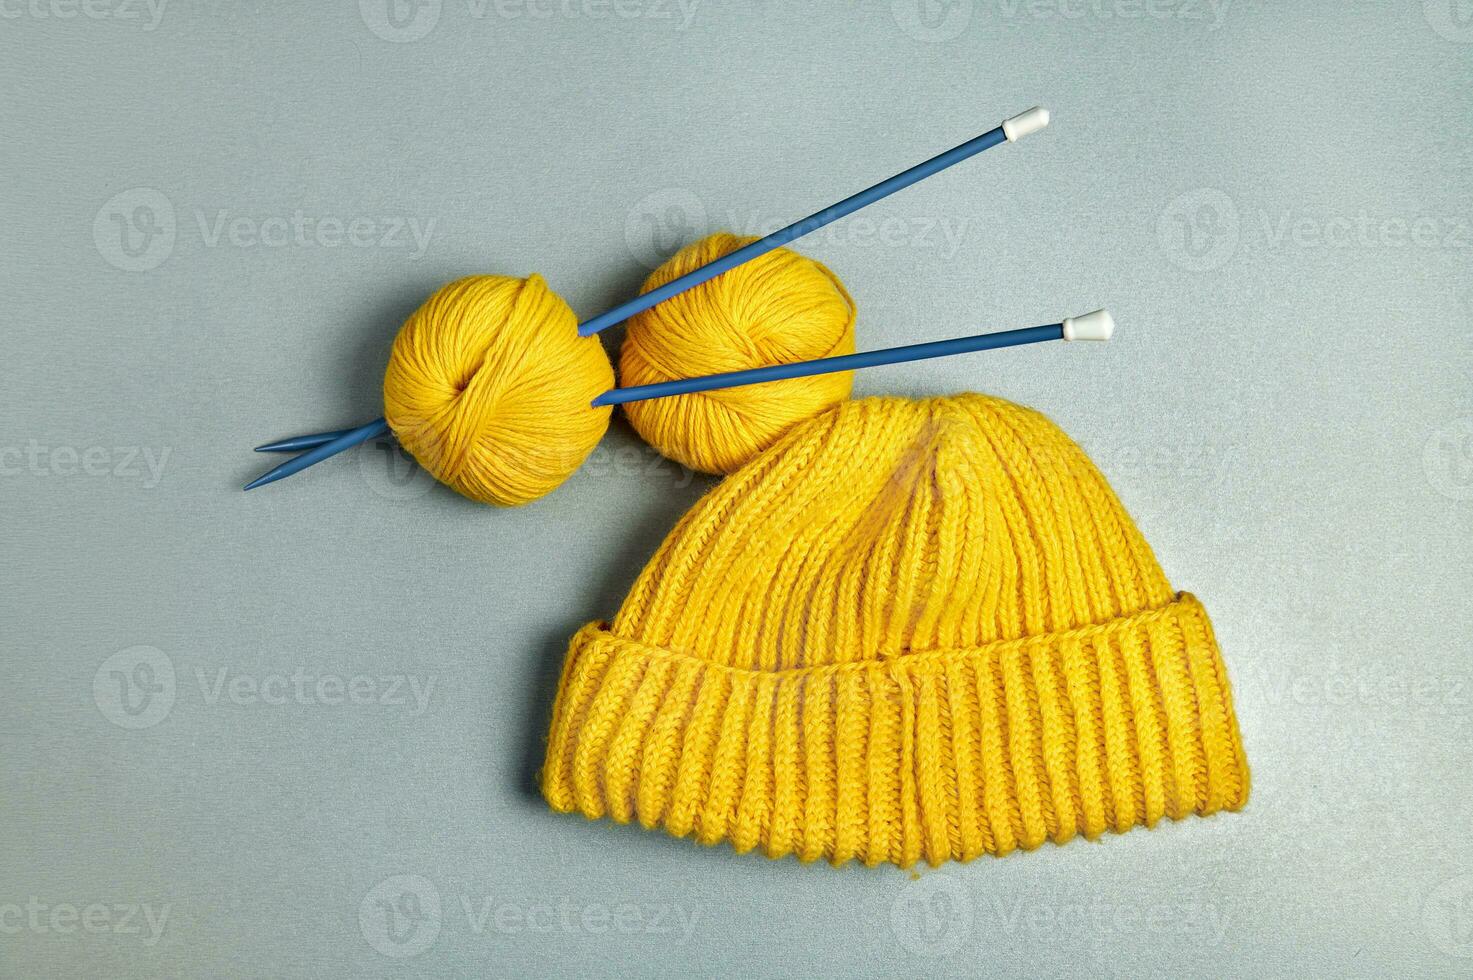 ett Artikel fotografera av en gul stickat ull hatt och två lindning ull trådar strung på lång blå stickning nålar på en grå bakgrund foto